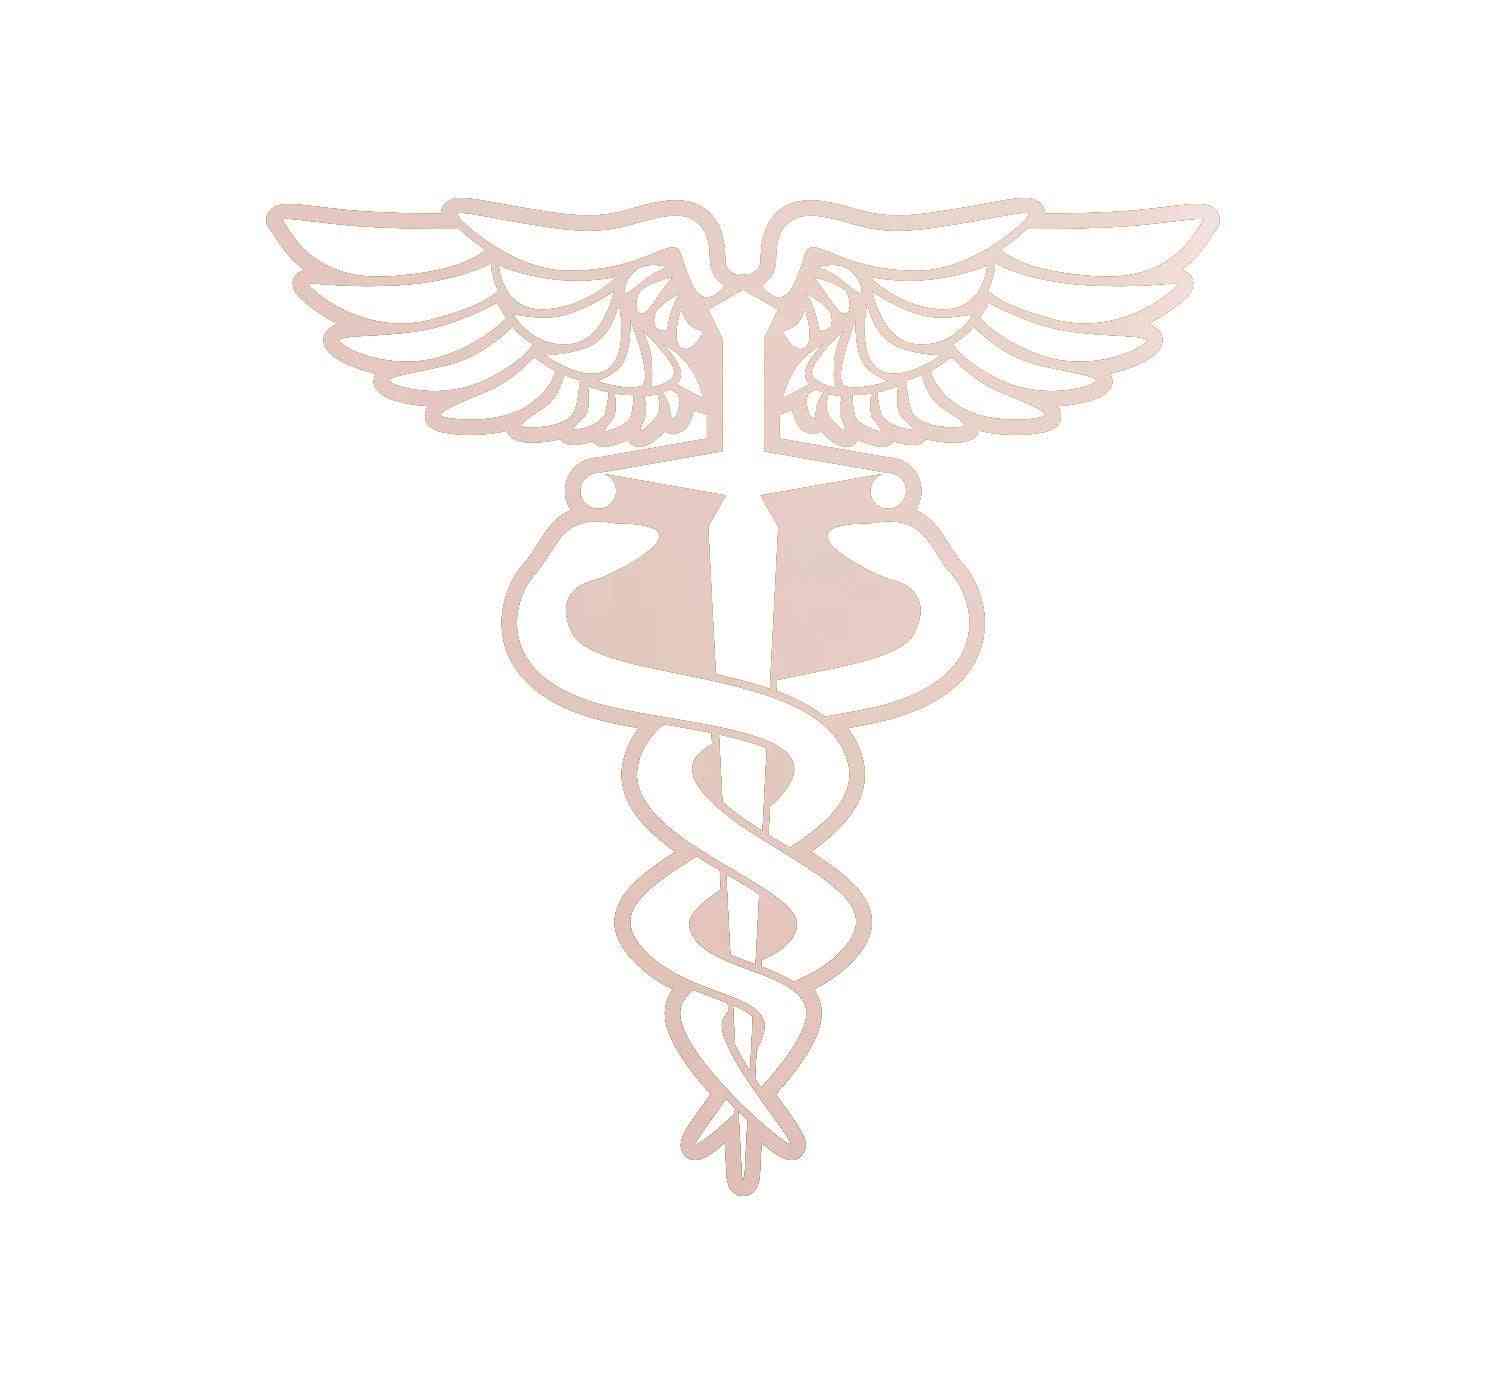 Medicinski simbol - liječnik / medicinska sestra / emt